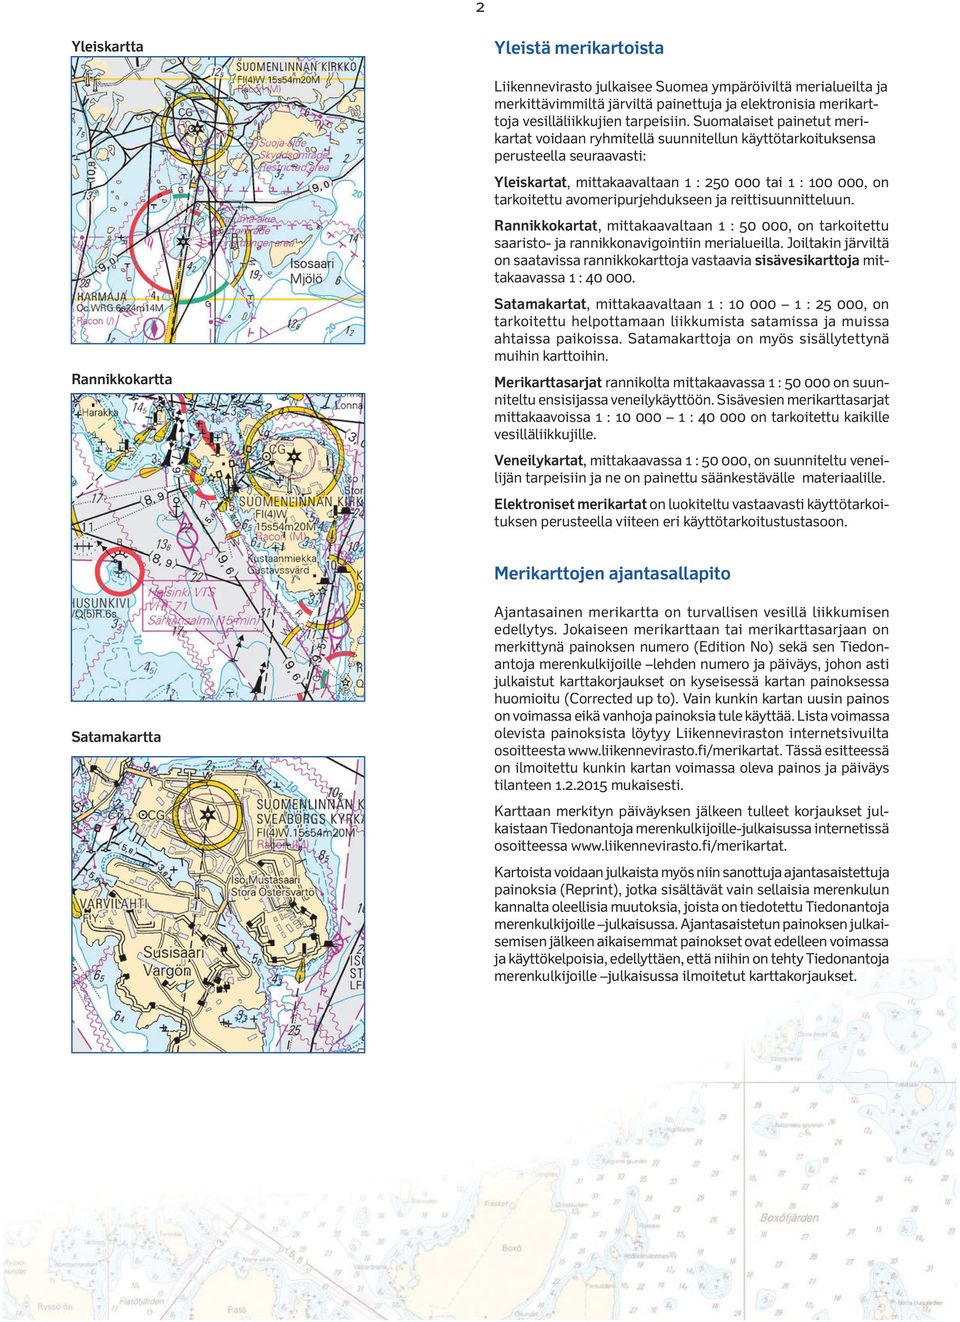 Suomalaiset painetut merikartat voidaan ryhmitellä suunnitellun käyttötarkoituksensa perusteella seuraavasti: Yleiskartat, mittakaavaltaan 1 : 250 000 tai 1 : 100 000, on tarkoitettu